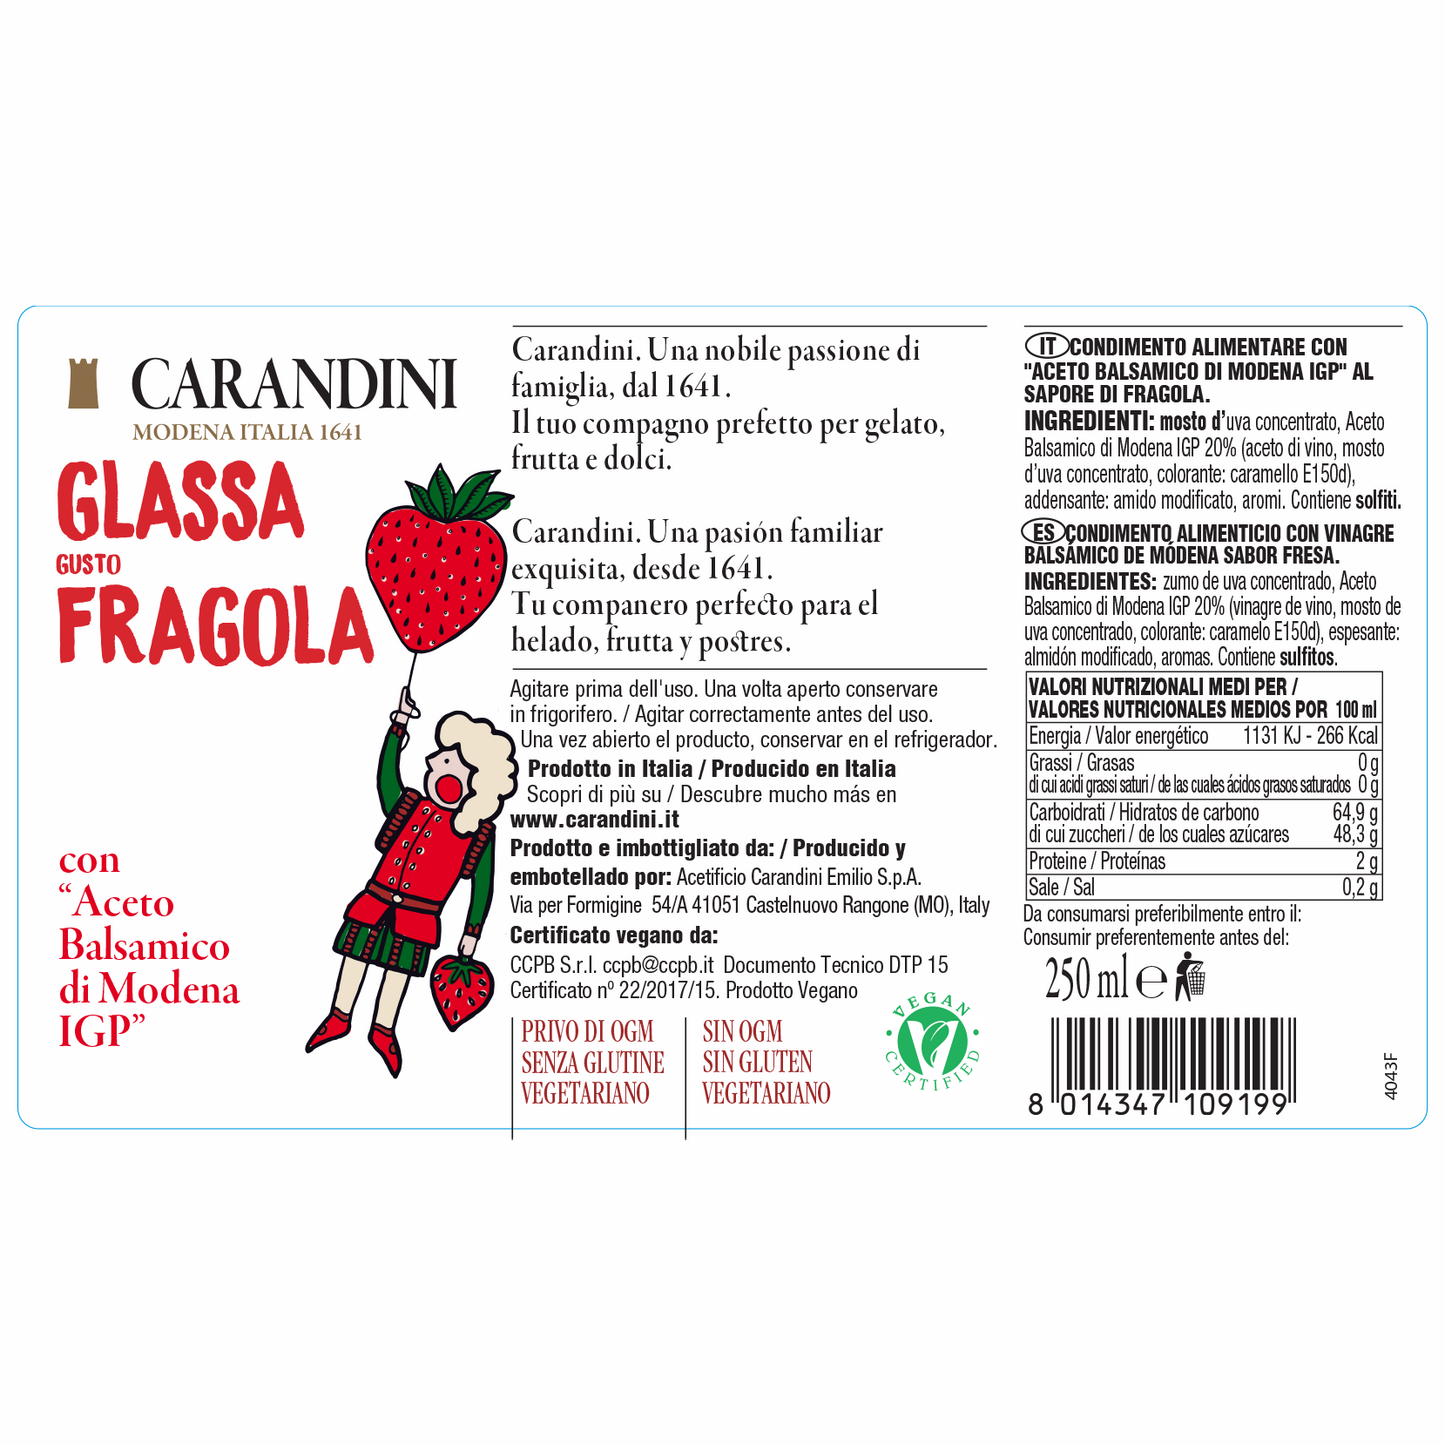 Glassa gusto Fragola con Aceto Balsamico di Modena IGP